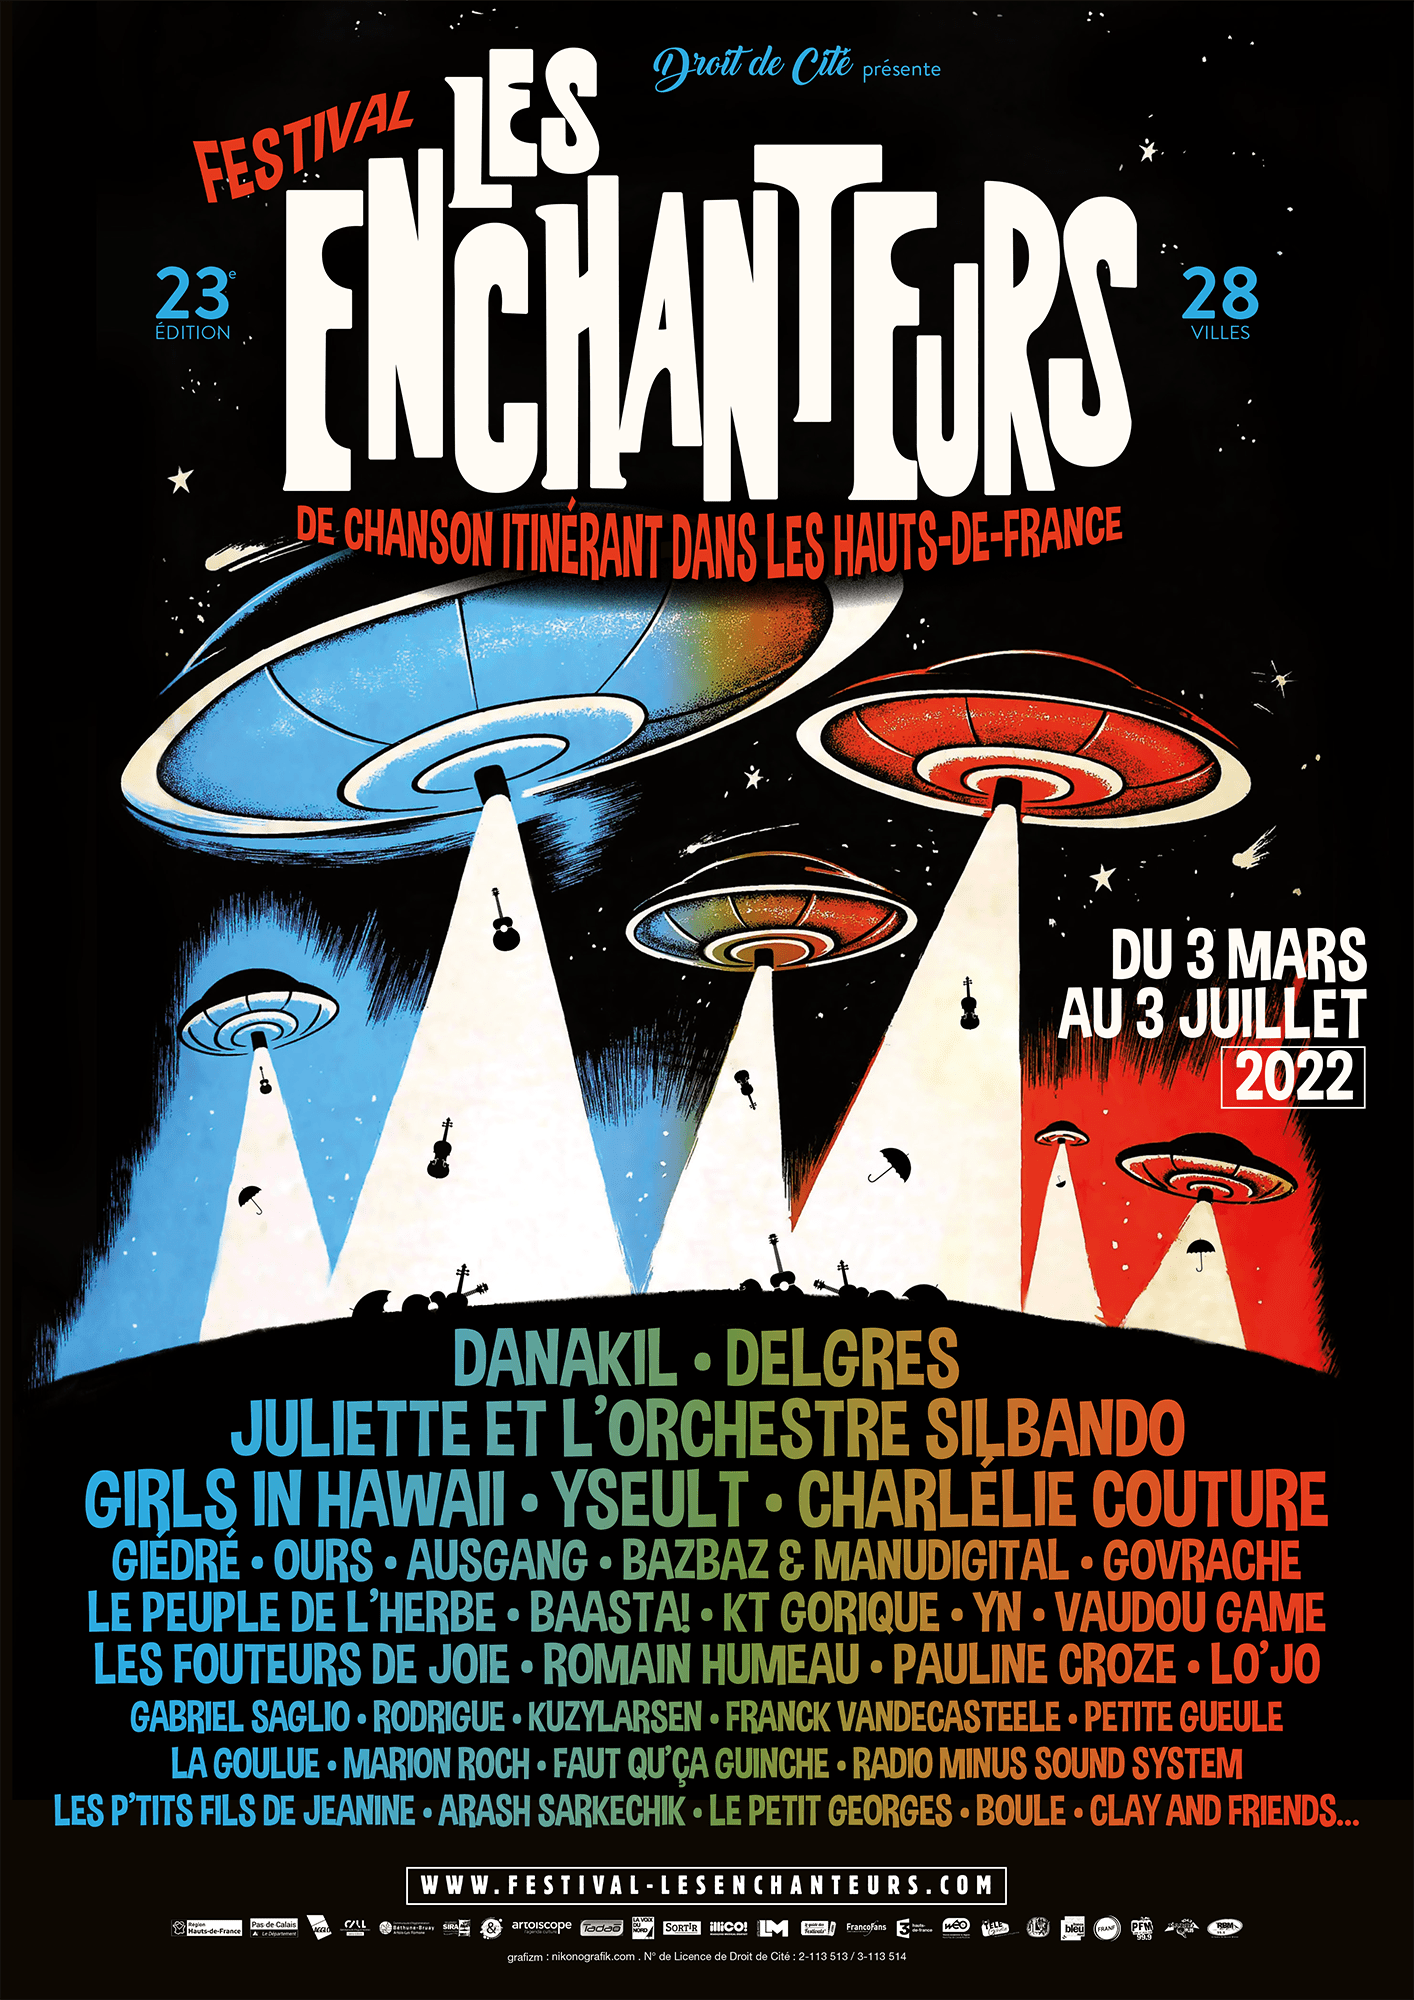 Festival Les Enchanteurs 2022 - Droit de Cité - Artoiscope